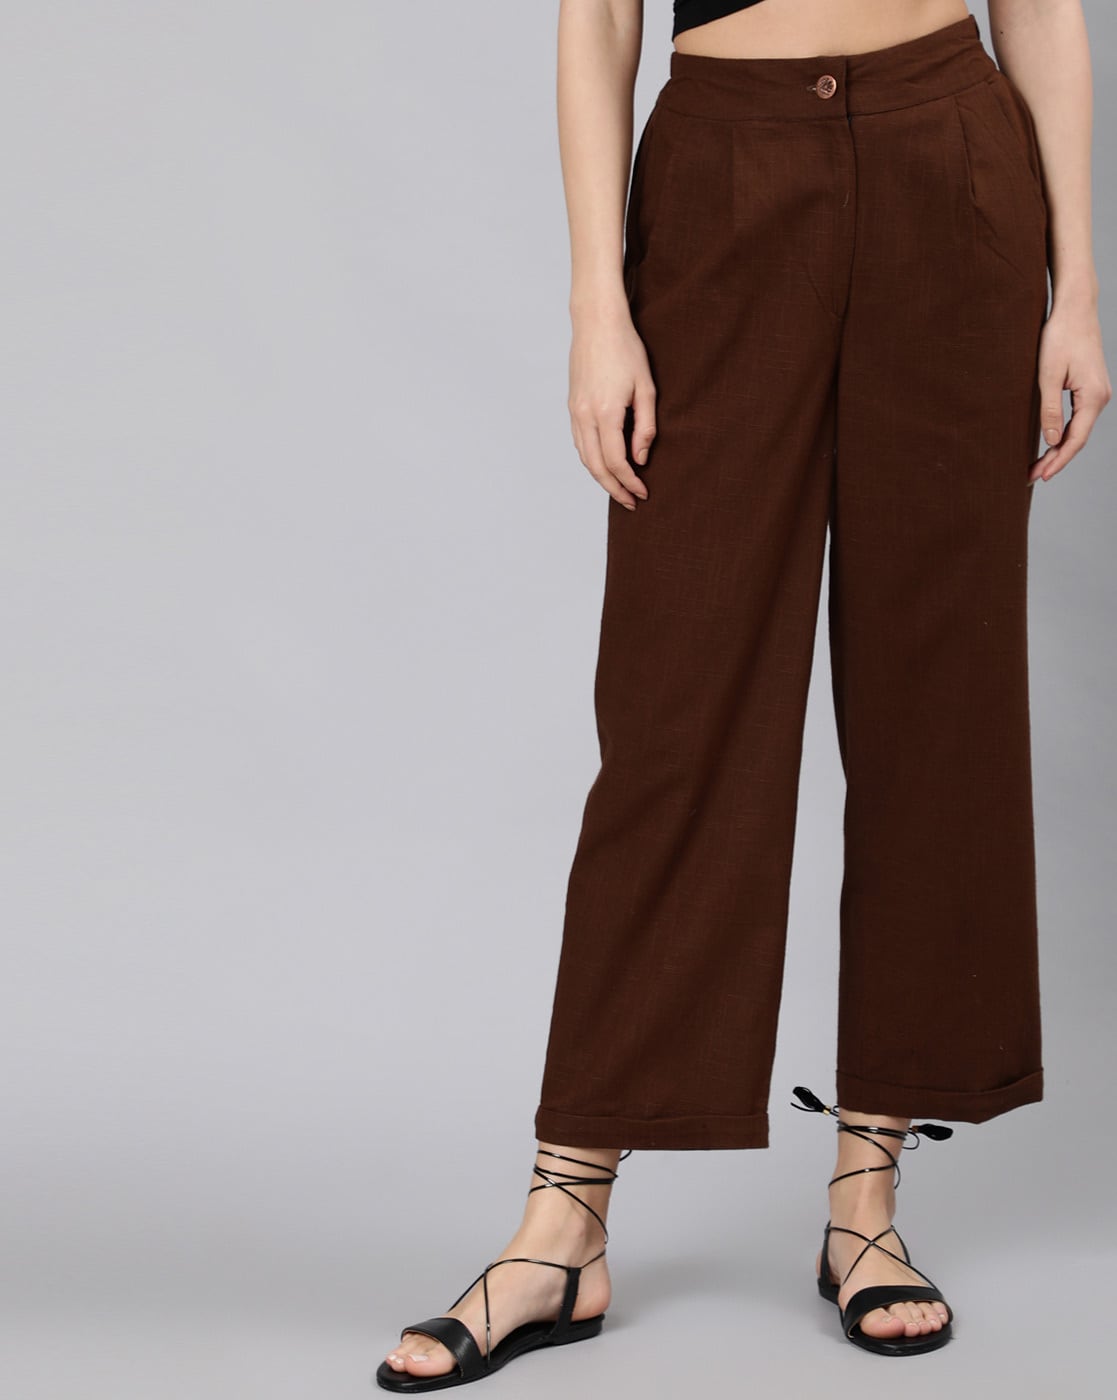 Women Brown Trousers  Buy Women Brown Trousers online in India